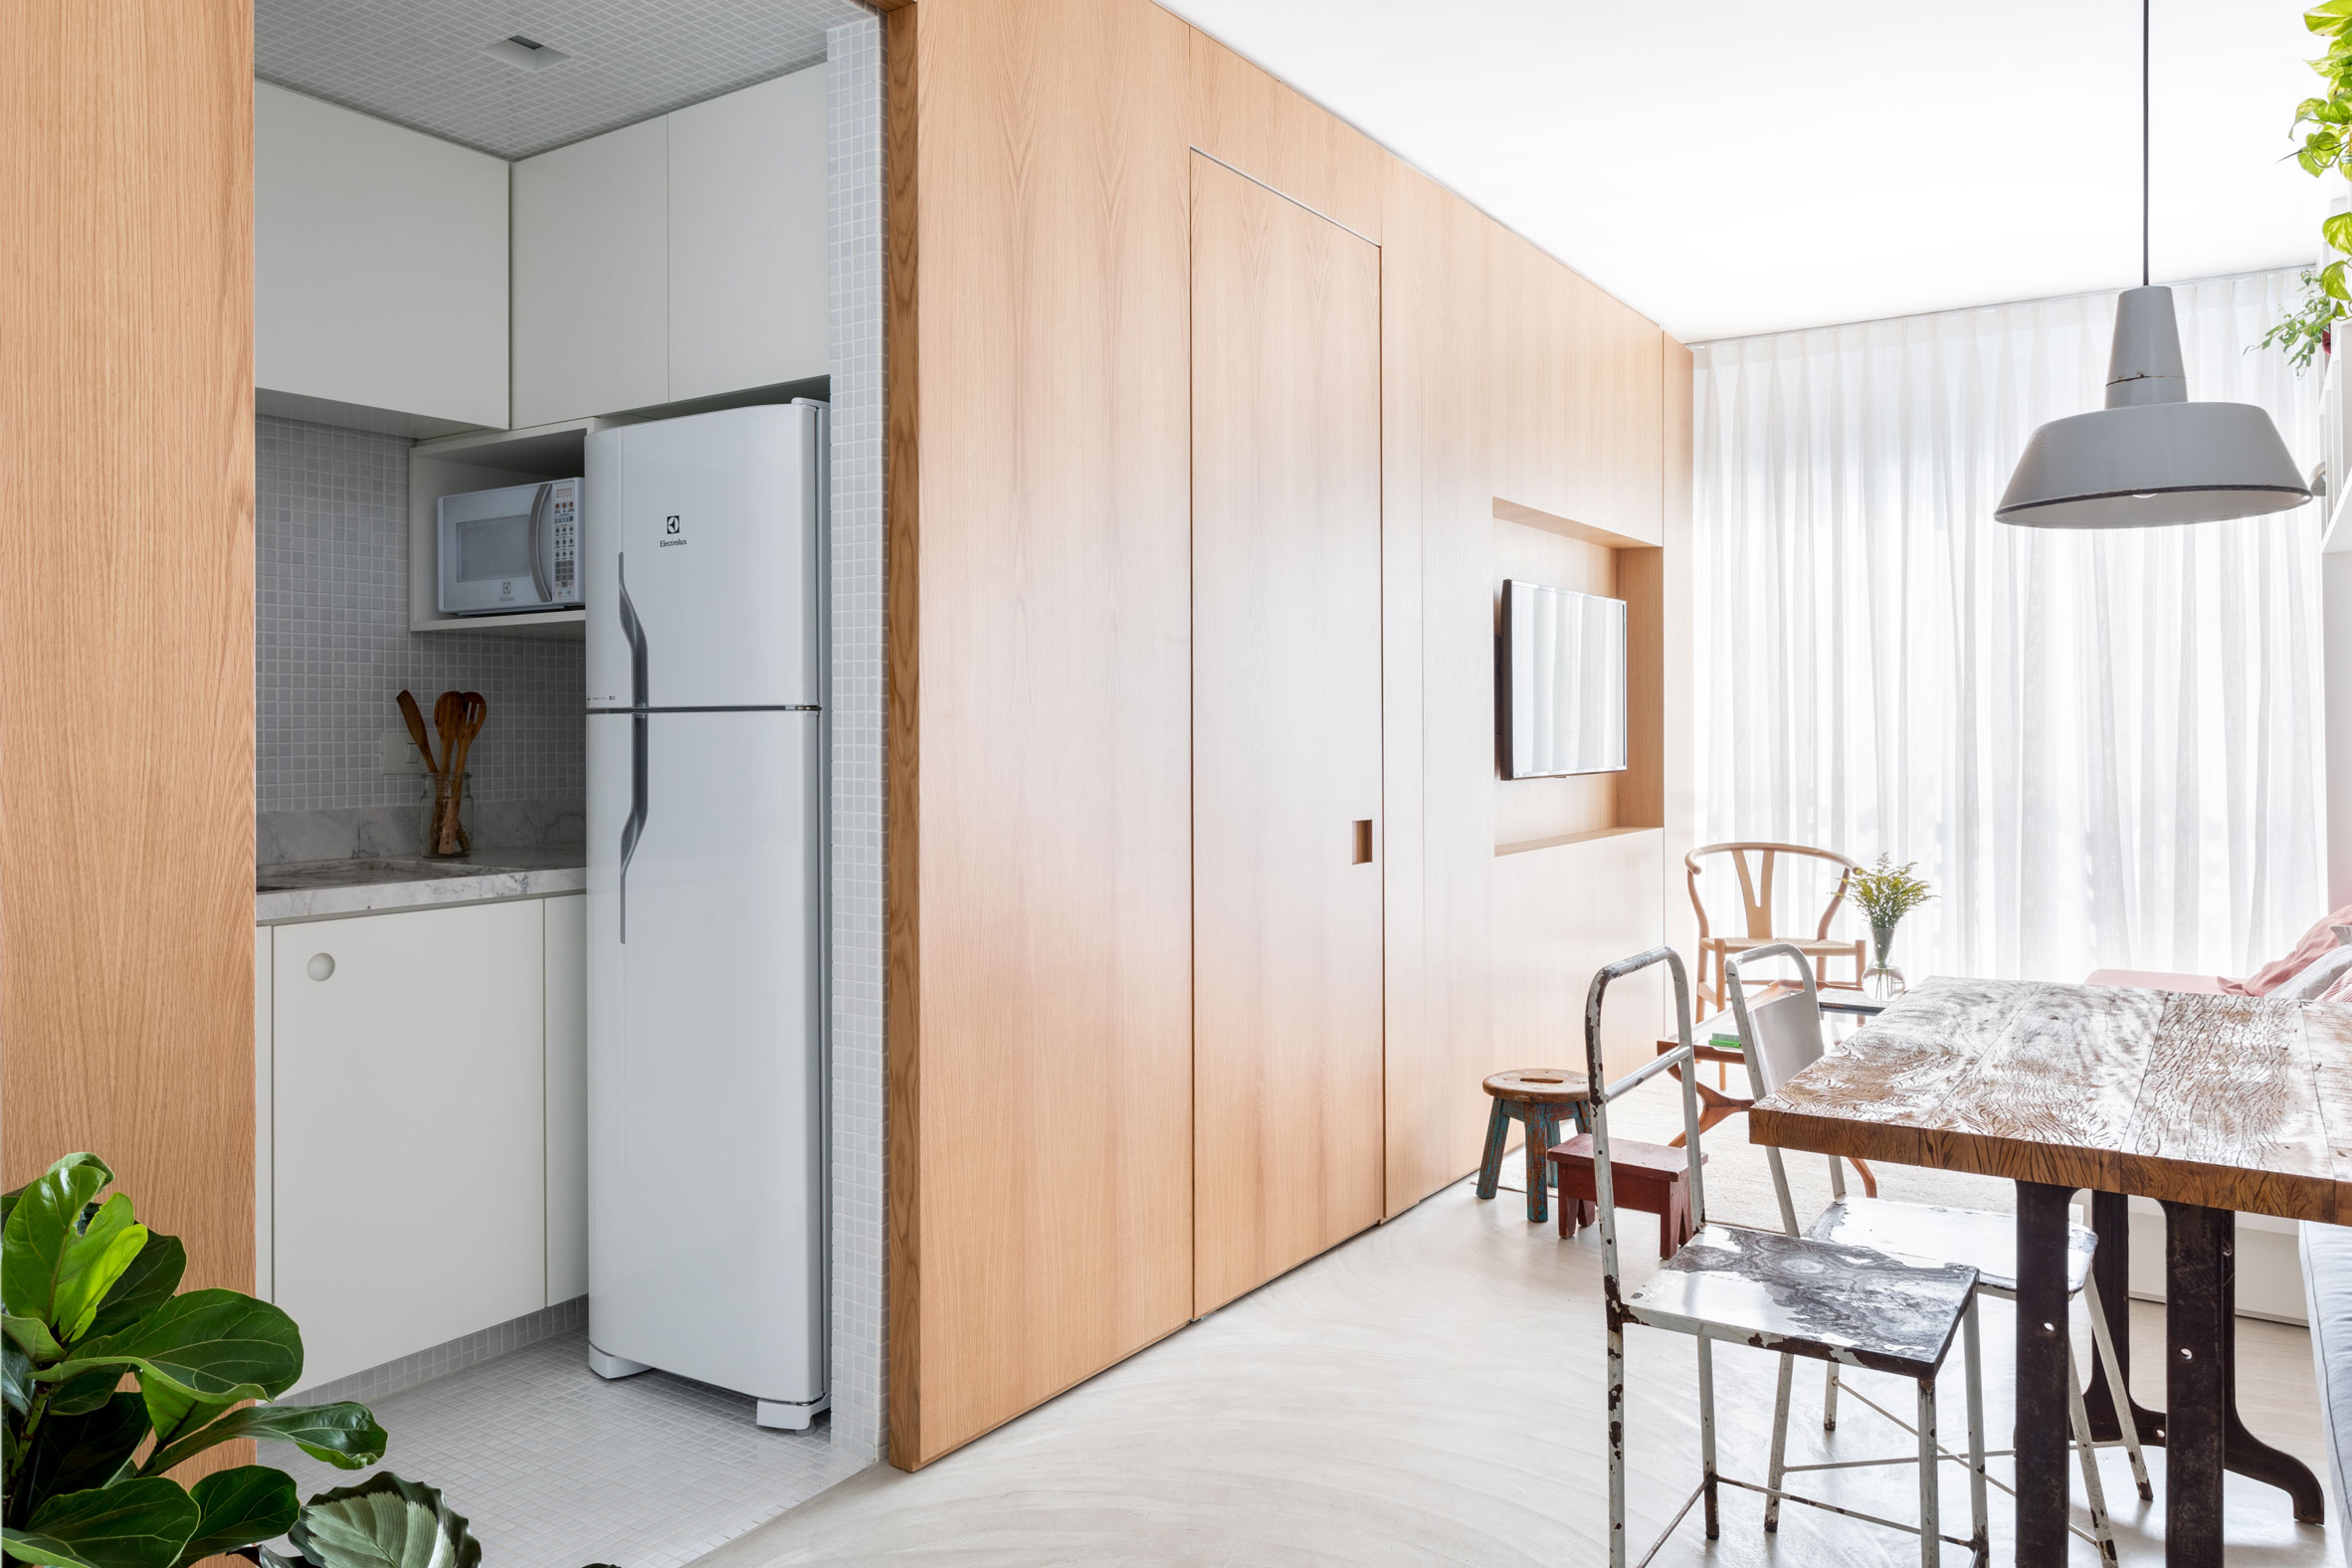 Реновиран апартамент предлага поглед към идеи за малка кухня